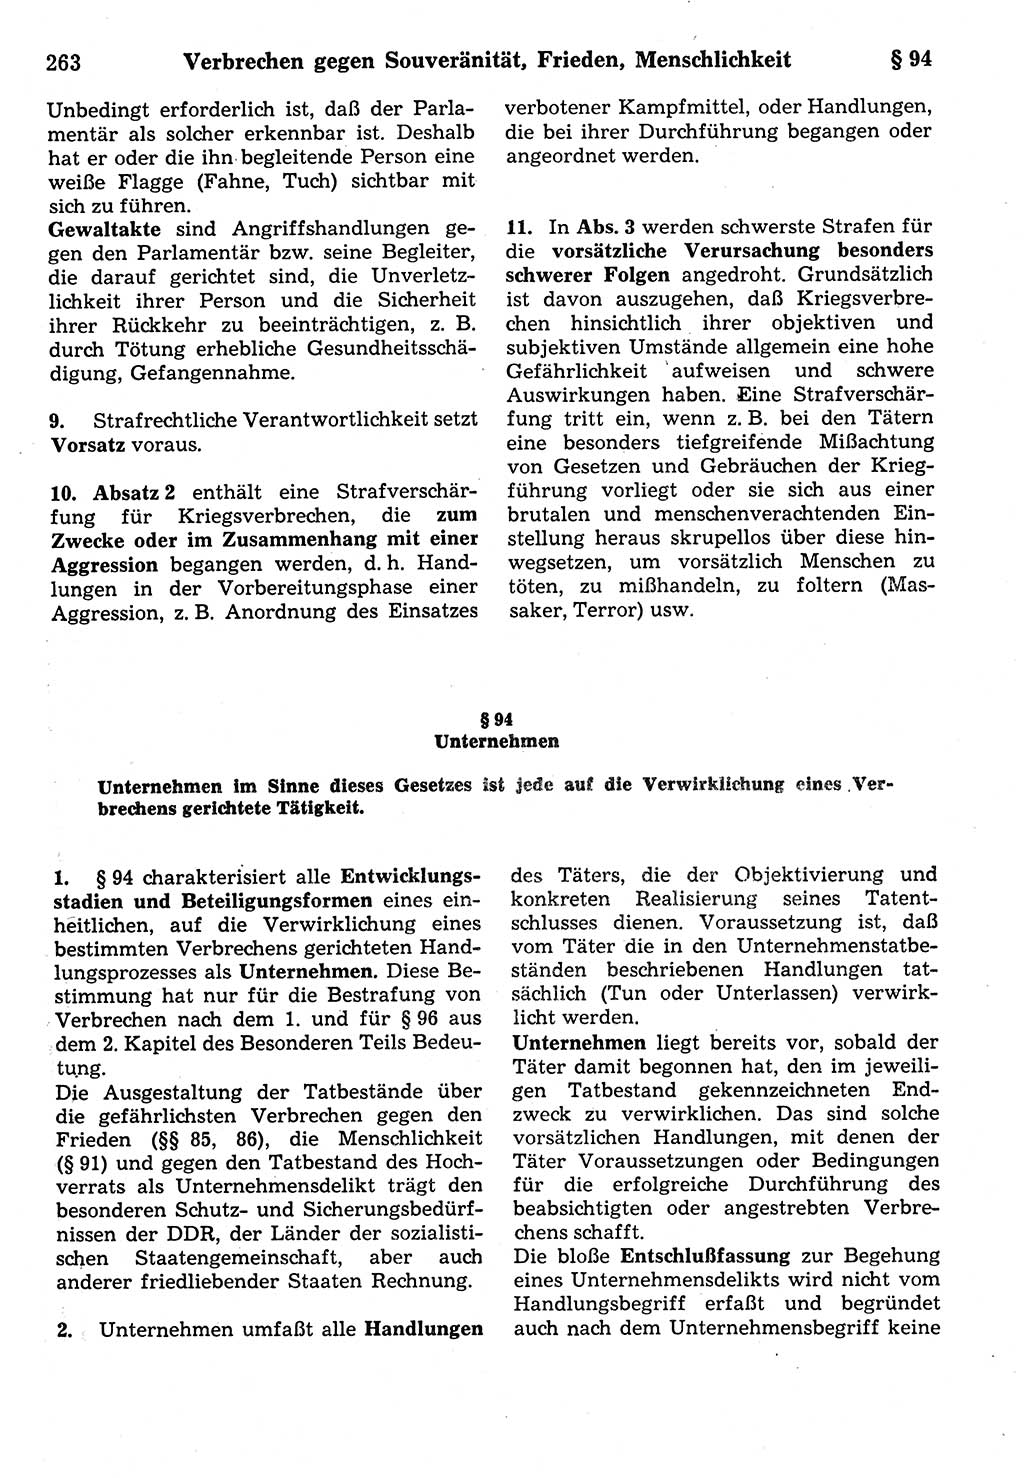 Strafrecht der Deutschen Demokratischen Republik (DDR), Kommentar zum Strafgesetzbuch (StGB) 1987, Seite 263 (Strafr. DDR Komm. StGB 1987, S. 263)